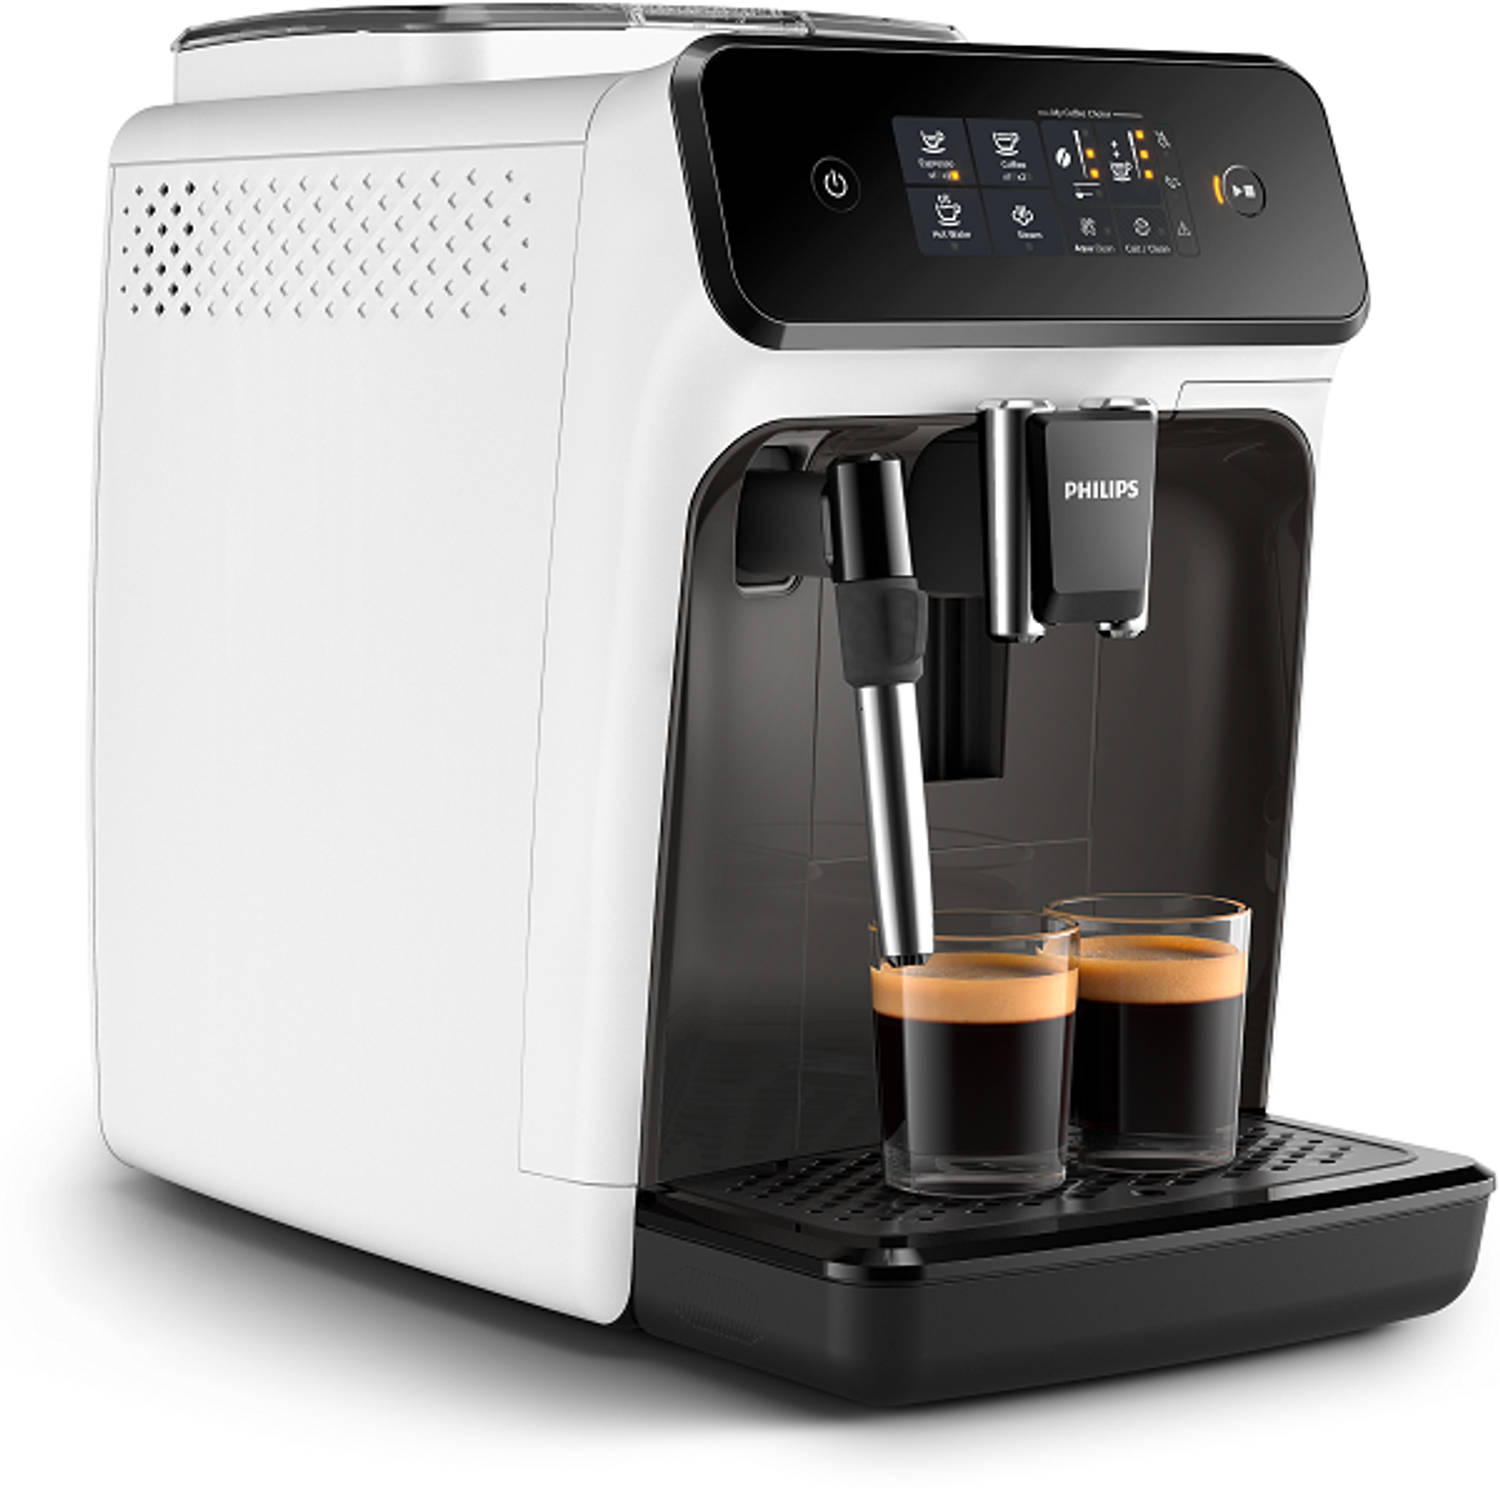 Philips volautomaat espressomachine 1200 series - wit | Blokker